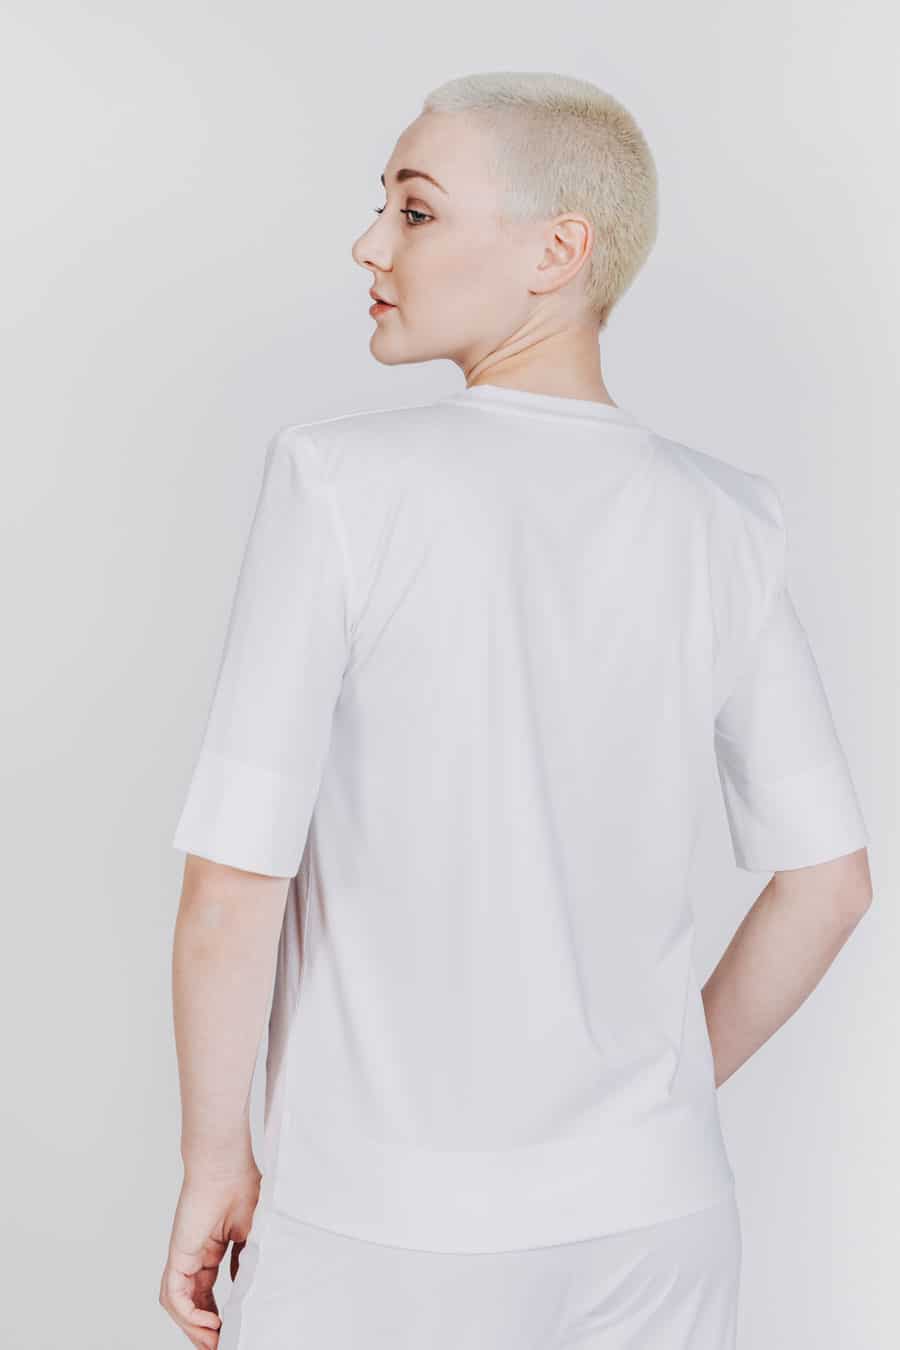 Deep White Black Modell LOU basic Damen T-Shirt mit Schulterpolstern Weiß, Stoffhose weiß Modell ZOE, Rundhalsausschnitt und kurze Ärmel, Ansicht von hinten